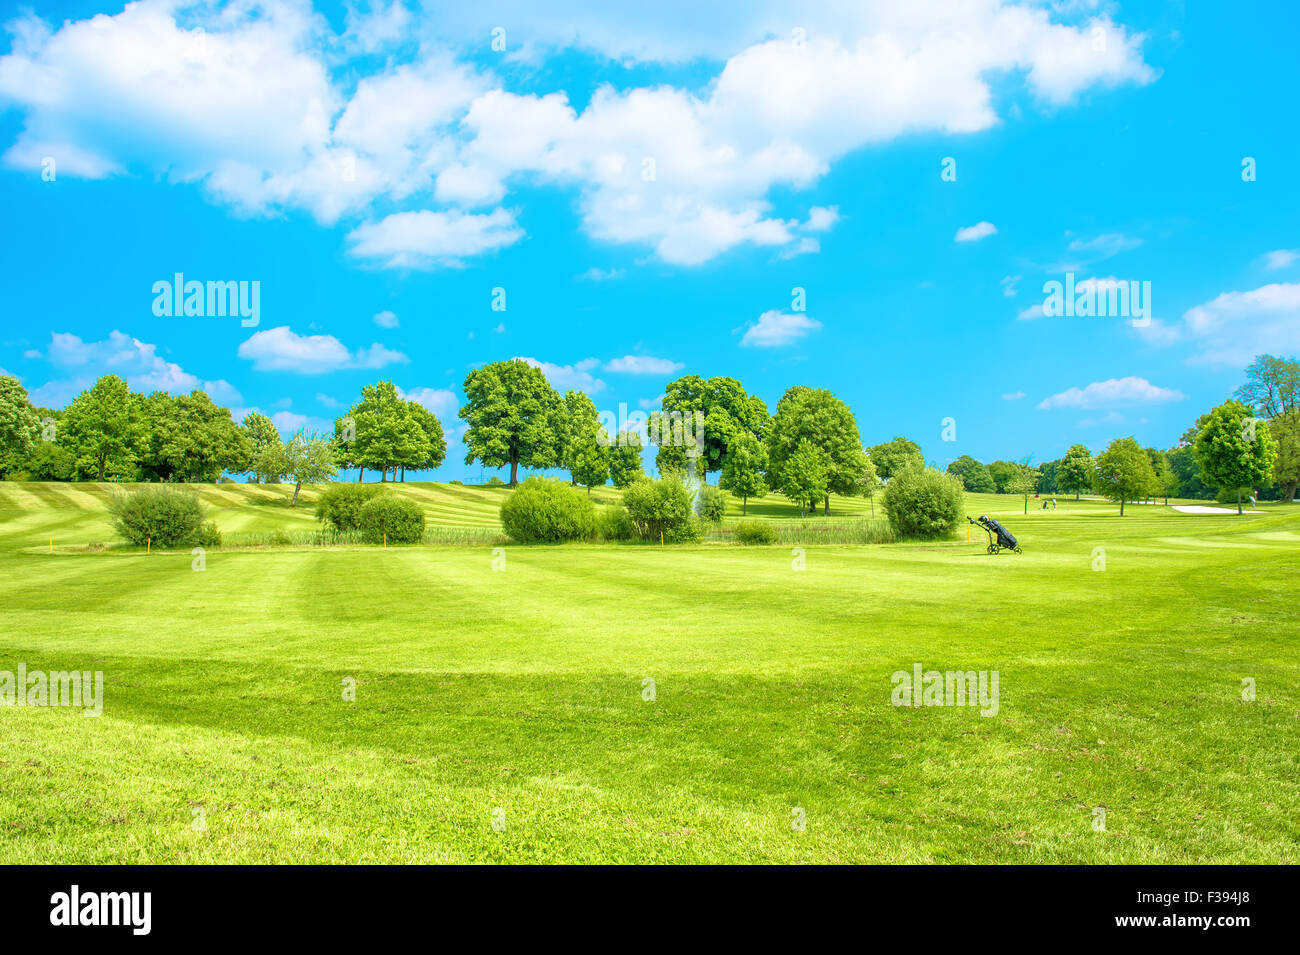 Le parcours de golf. Champ vert avec l'herbe fraîche, arbres et ciel nuageux ciel bleu Banque D'Images